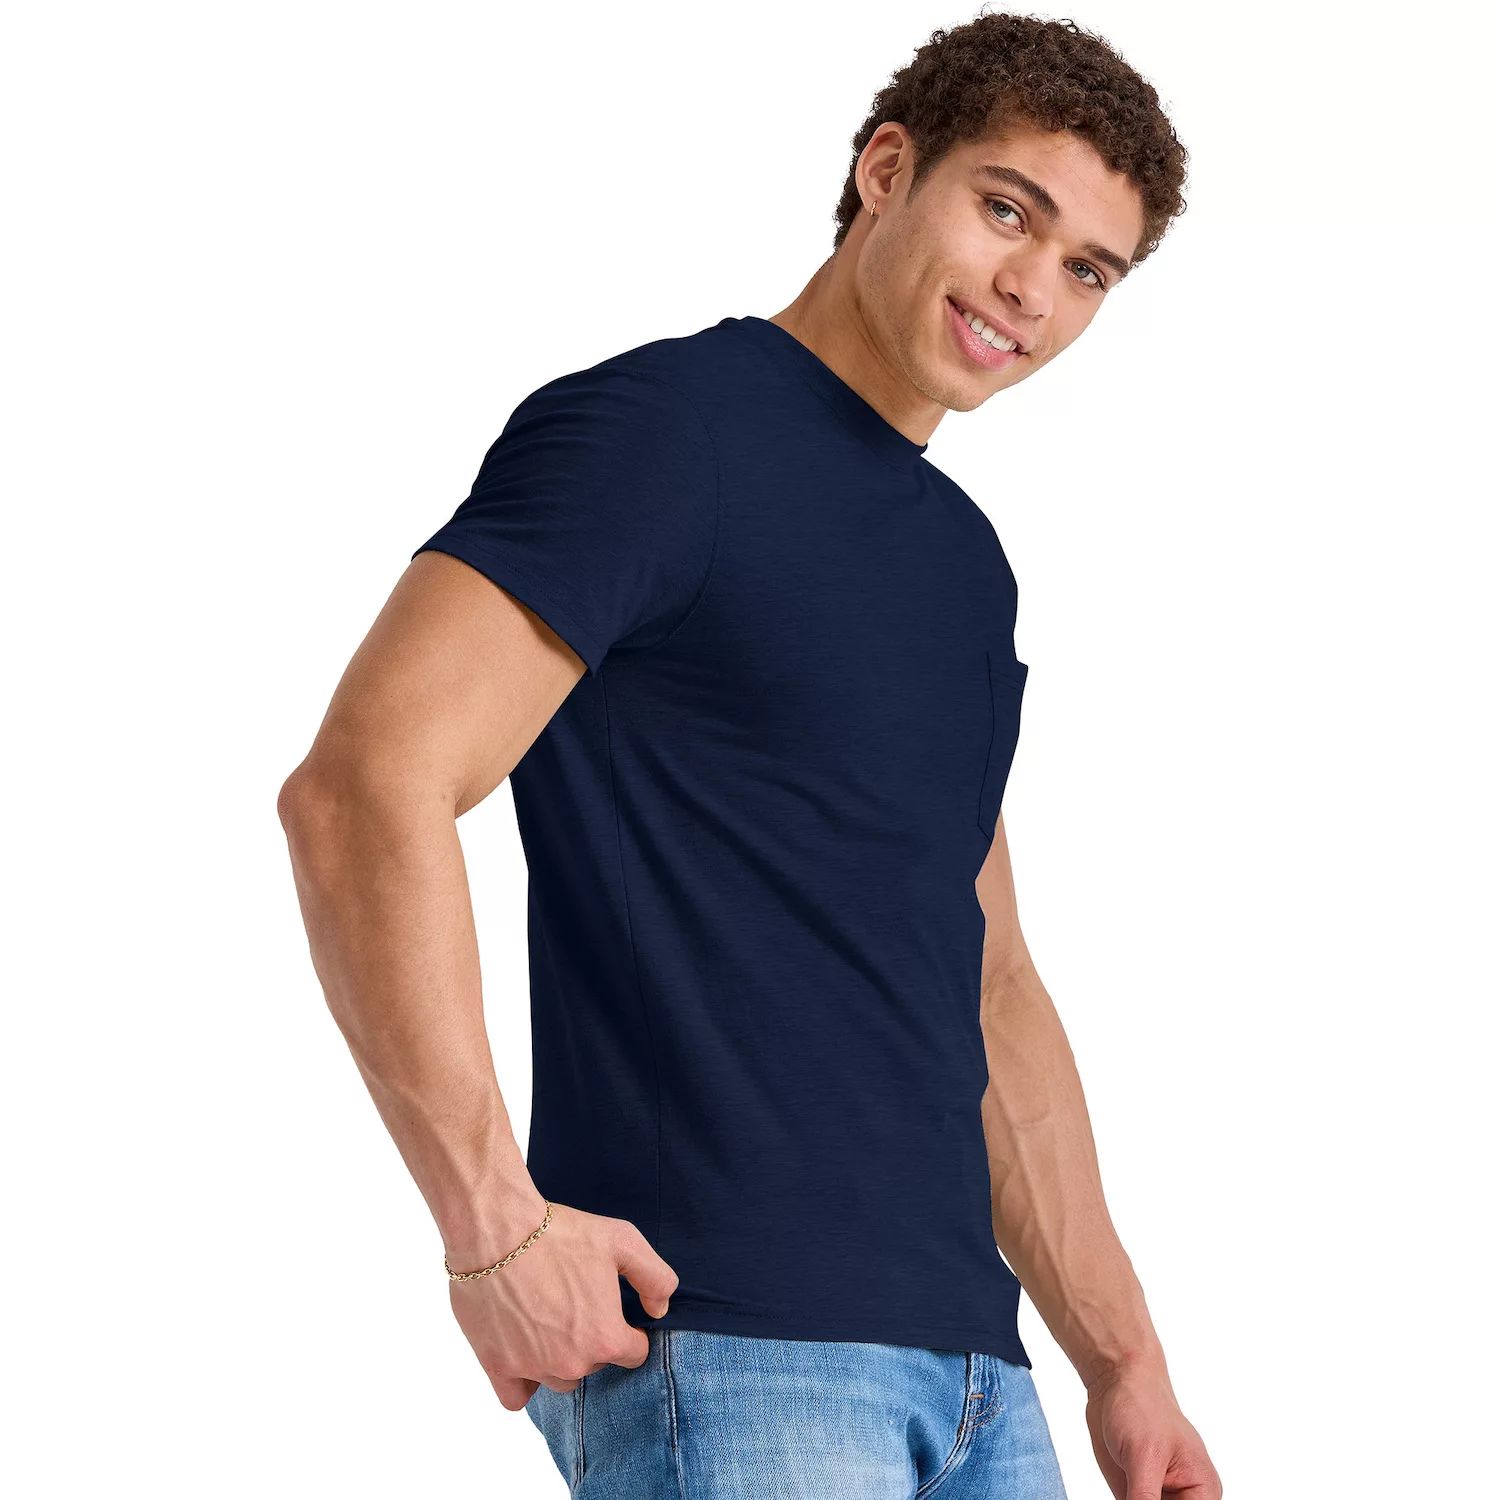 Мужская футболка с карманами Hanes Originals Tri-Blend мужская футболка originals tri blend с короткими рукавами и карманами hanes черный